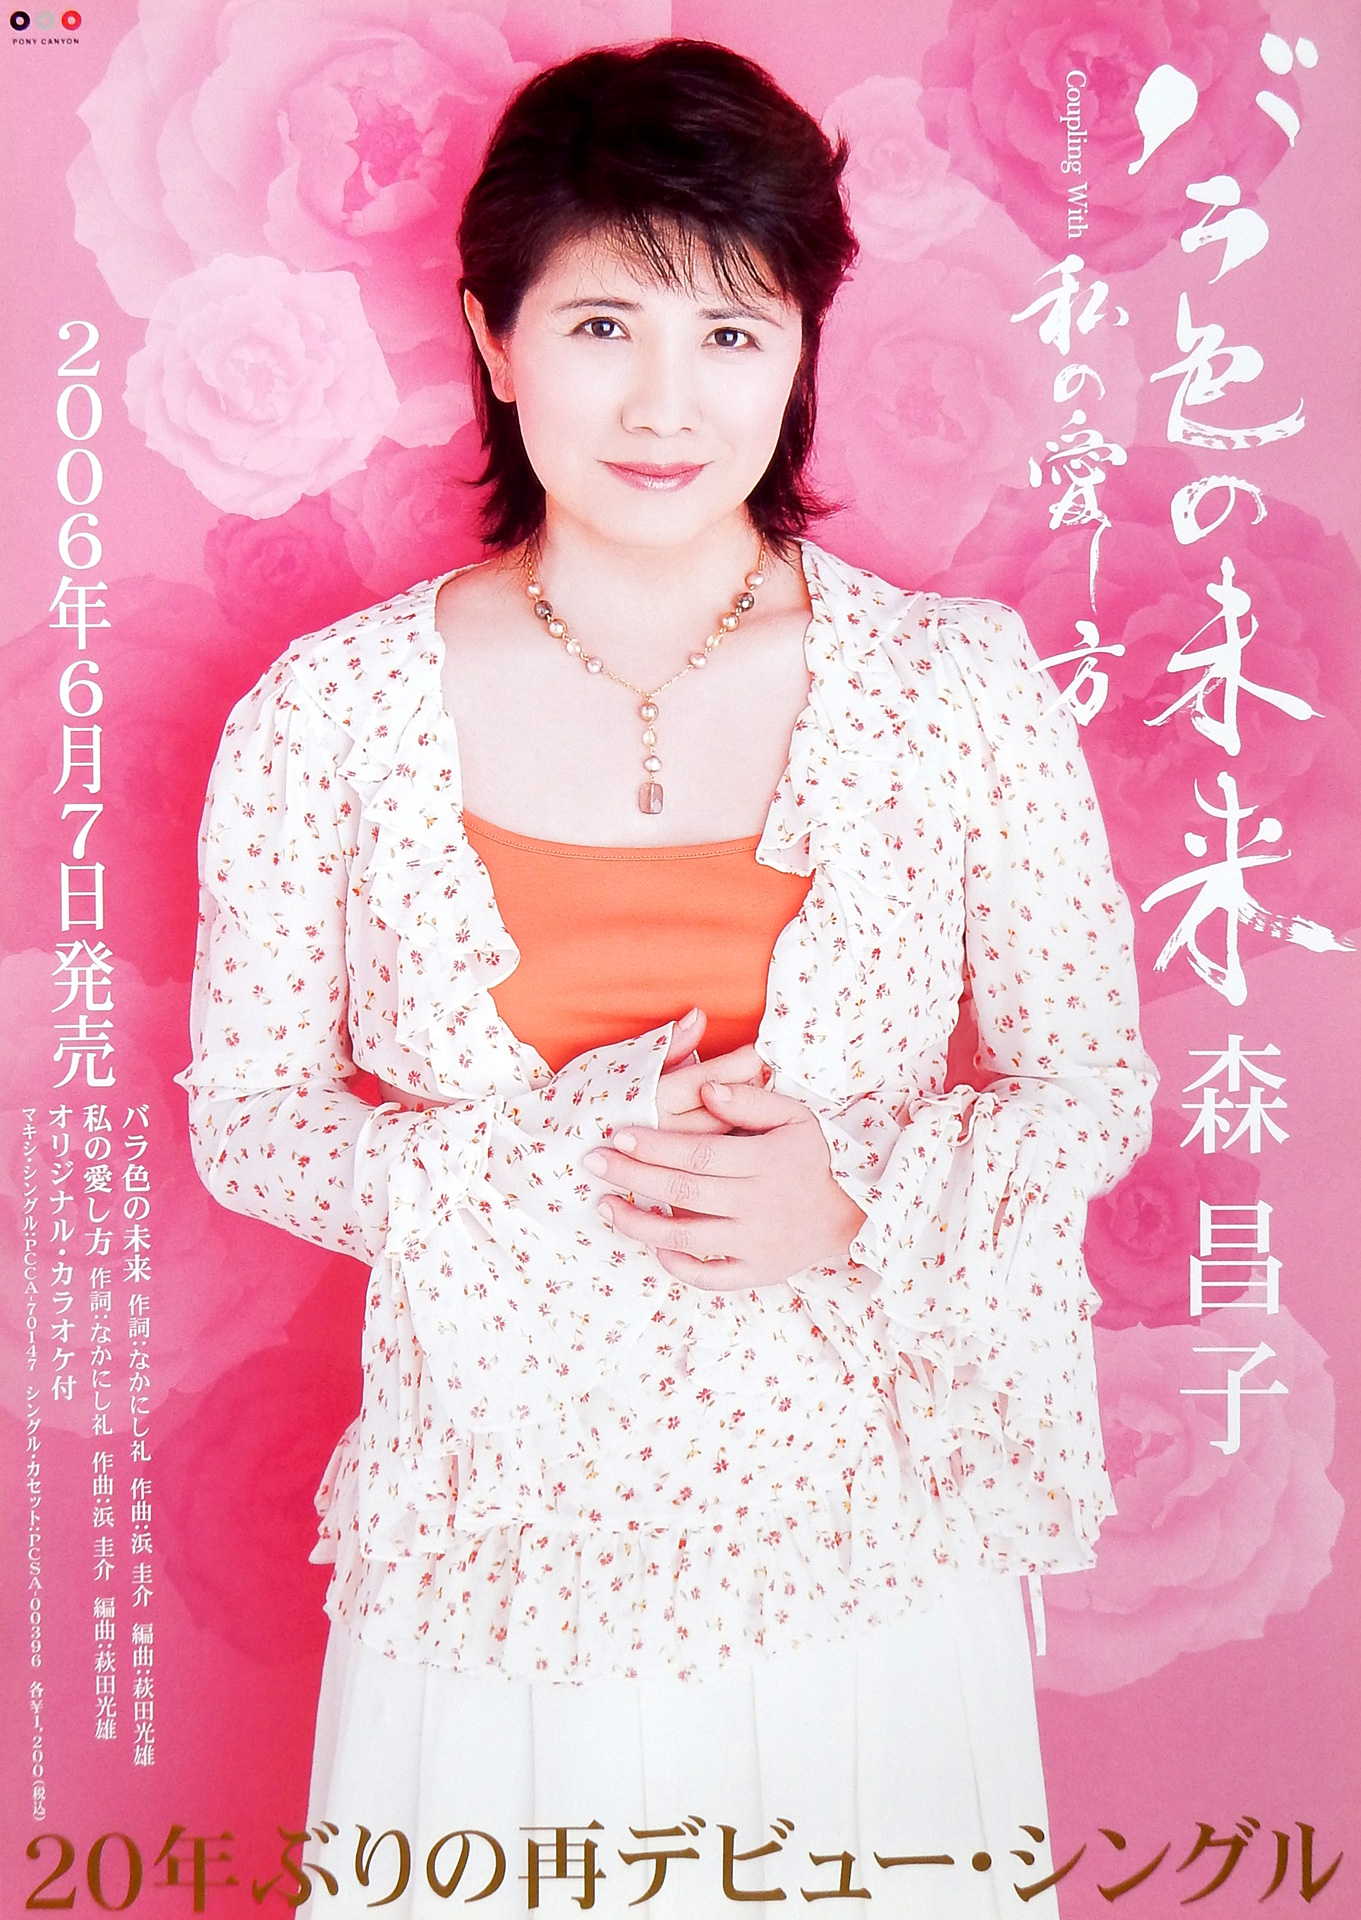 森昌子 「バラ色の未来」のポスター